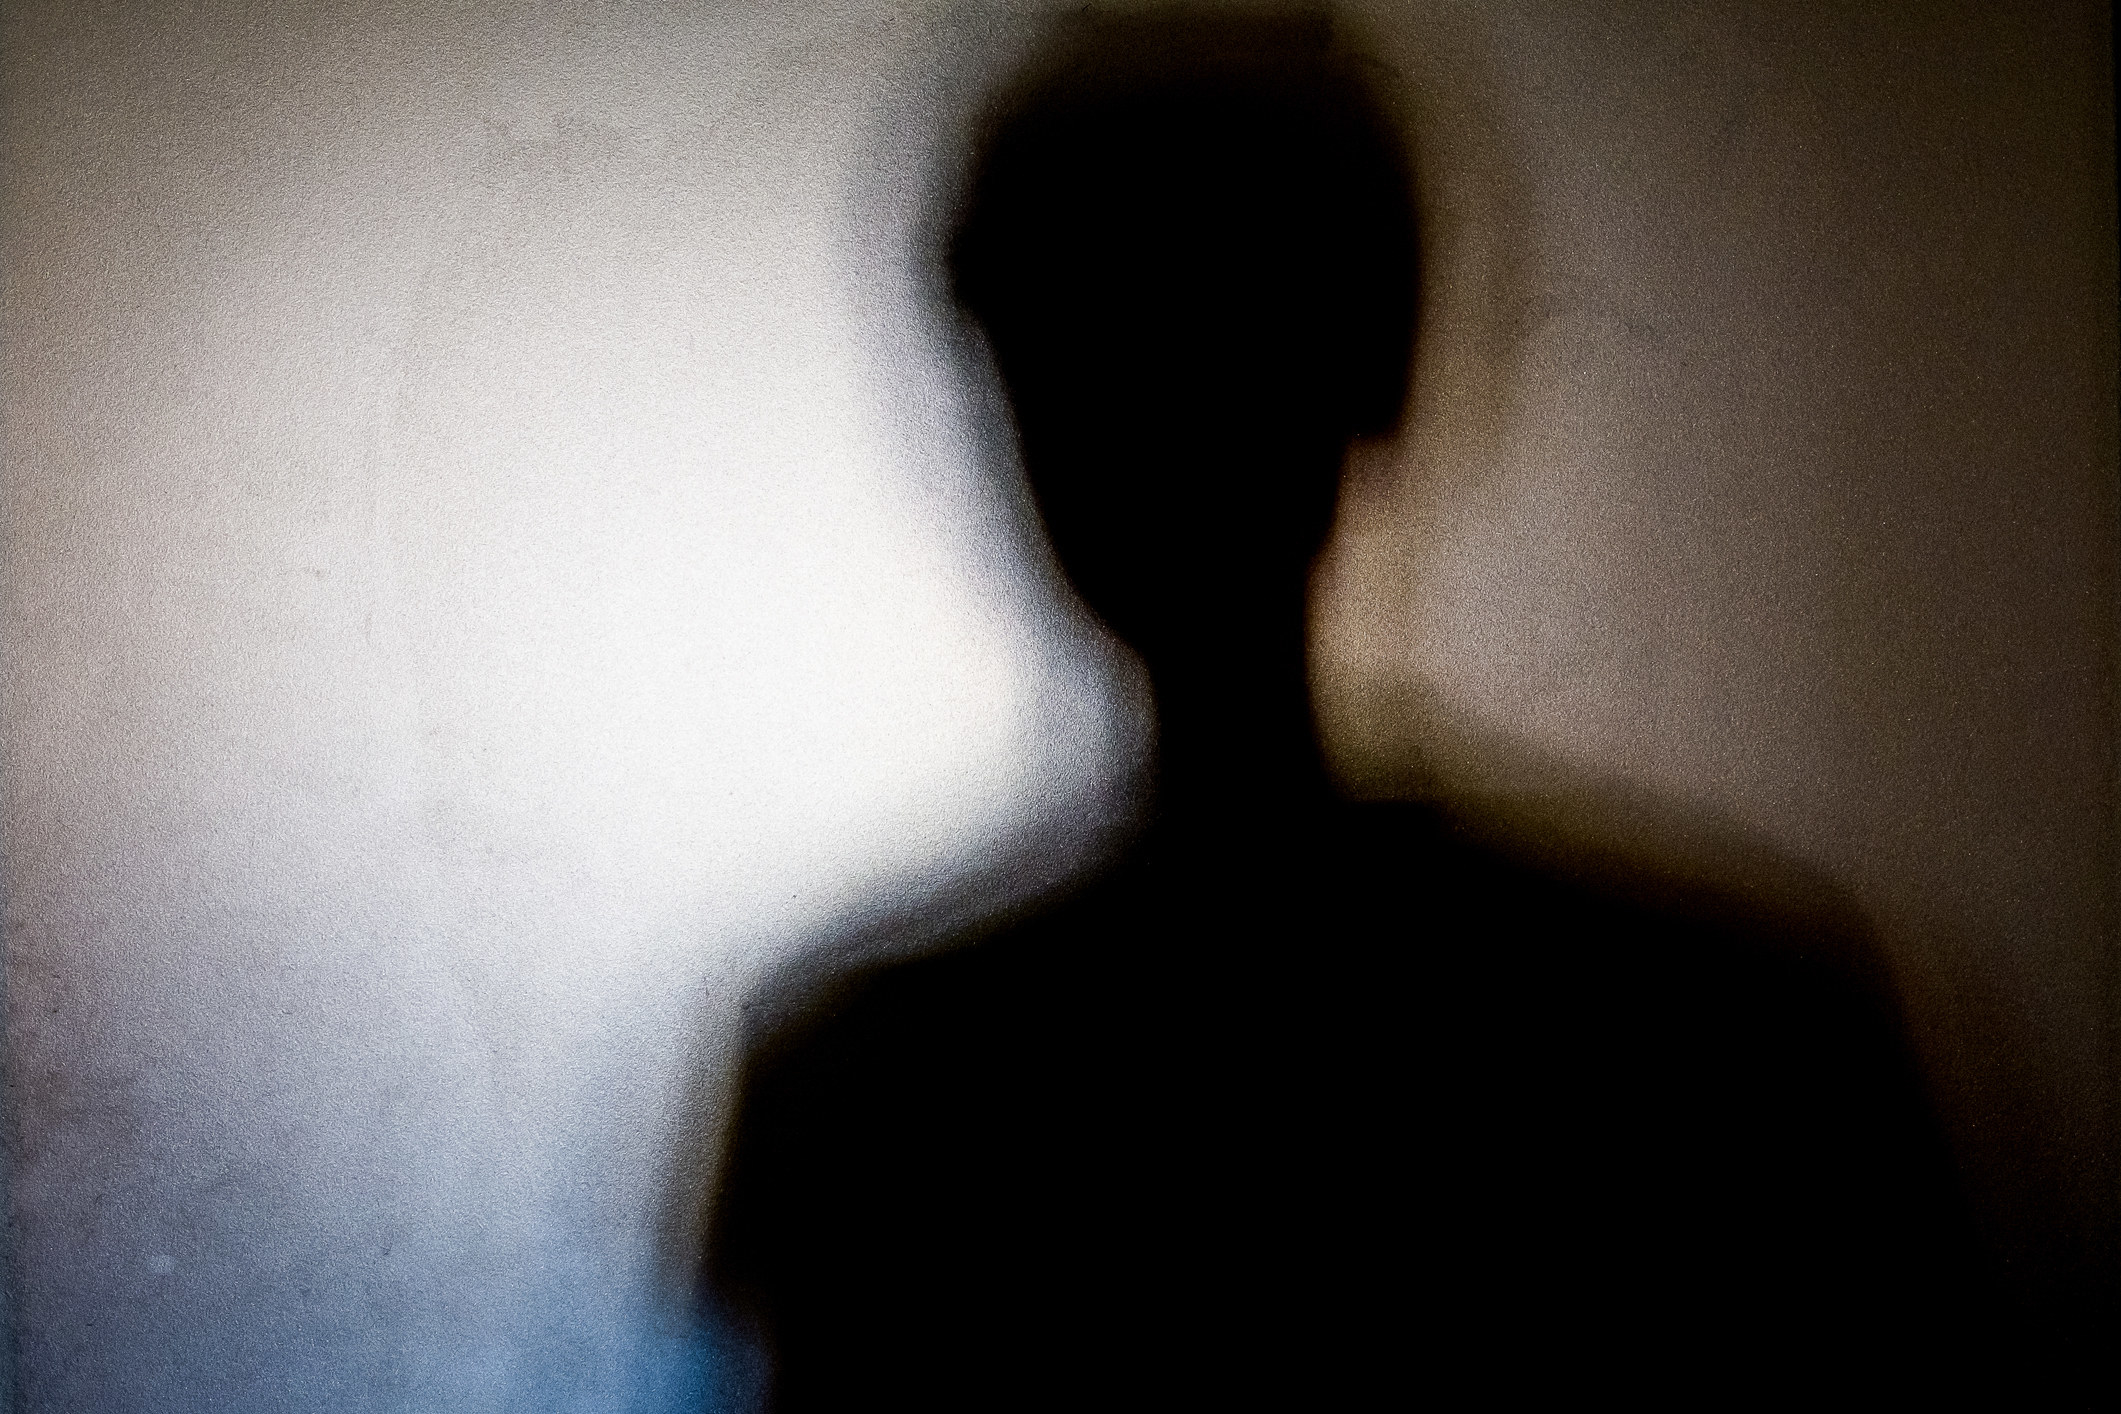 A shadowy figure